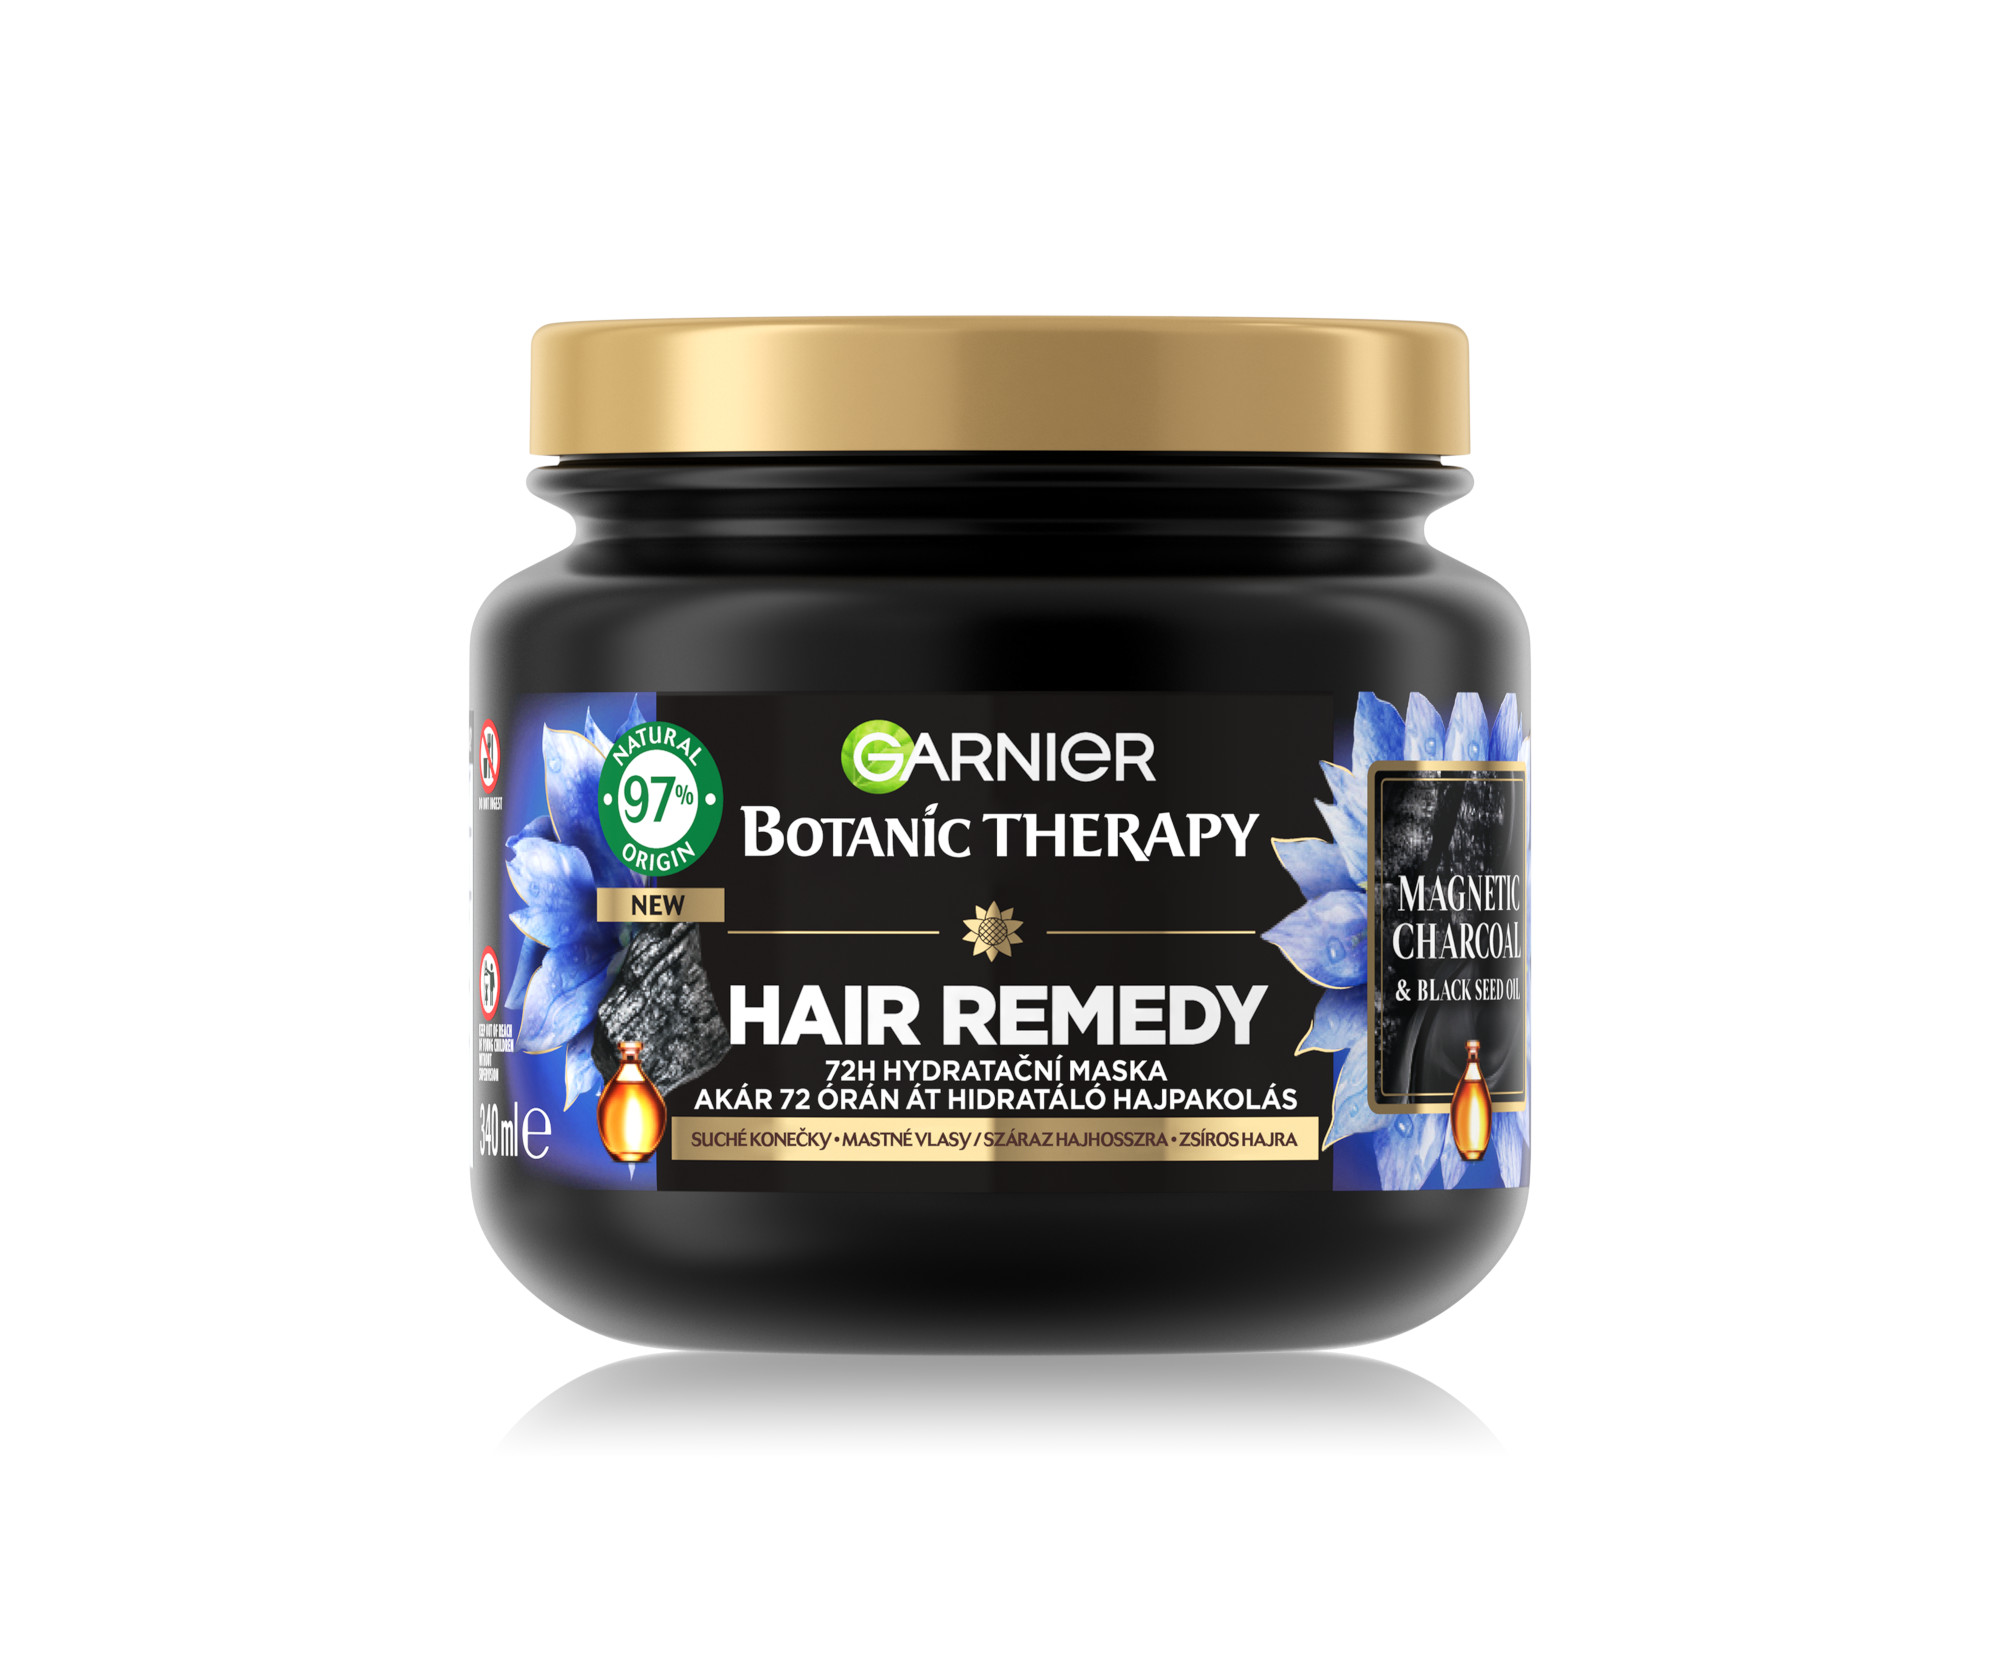 Hydratační maska pro mastné vlasy Garnier Botanic Therapy Hair Remedy Magnetic Charcoal - 340 ml + dárek zdarma